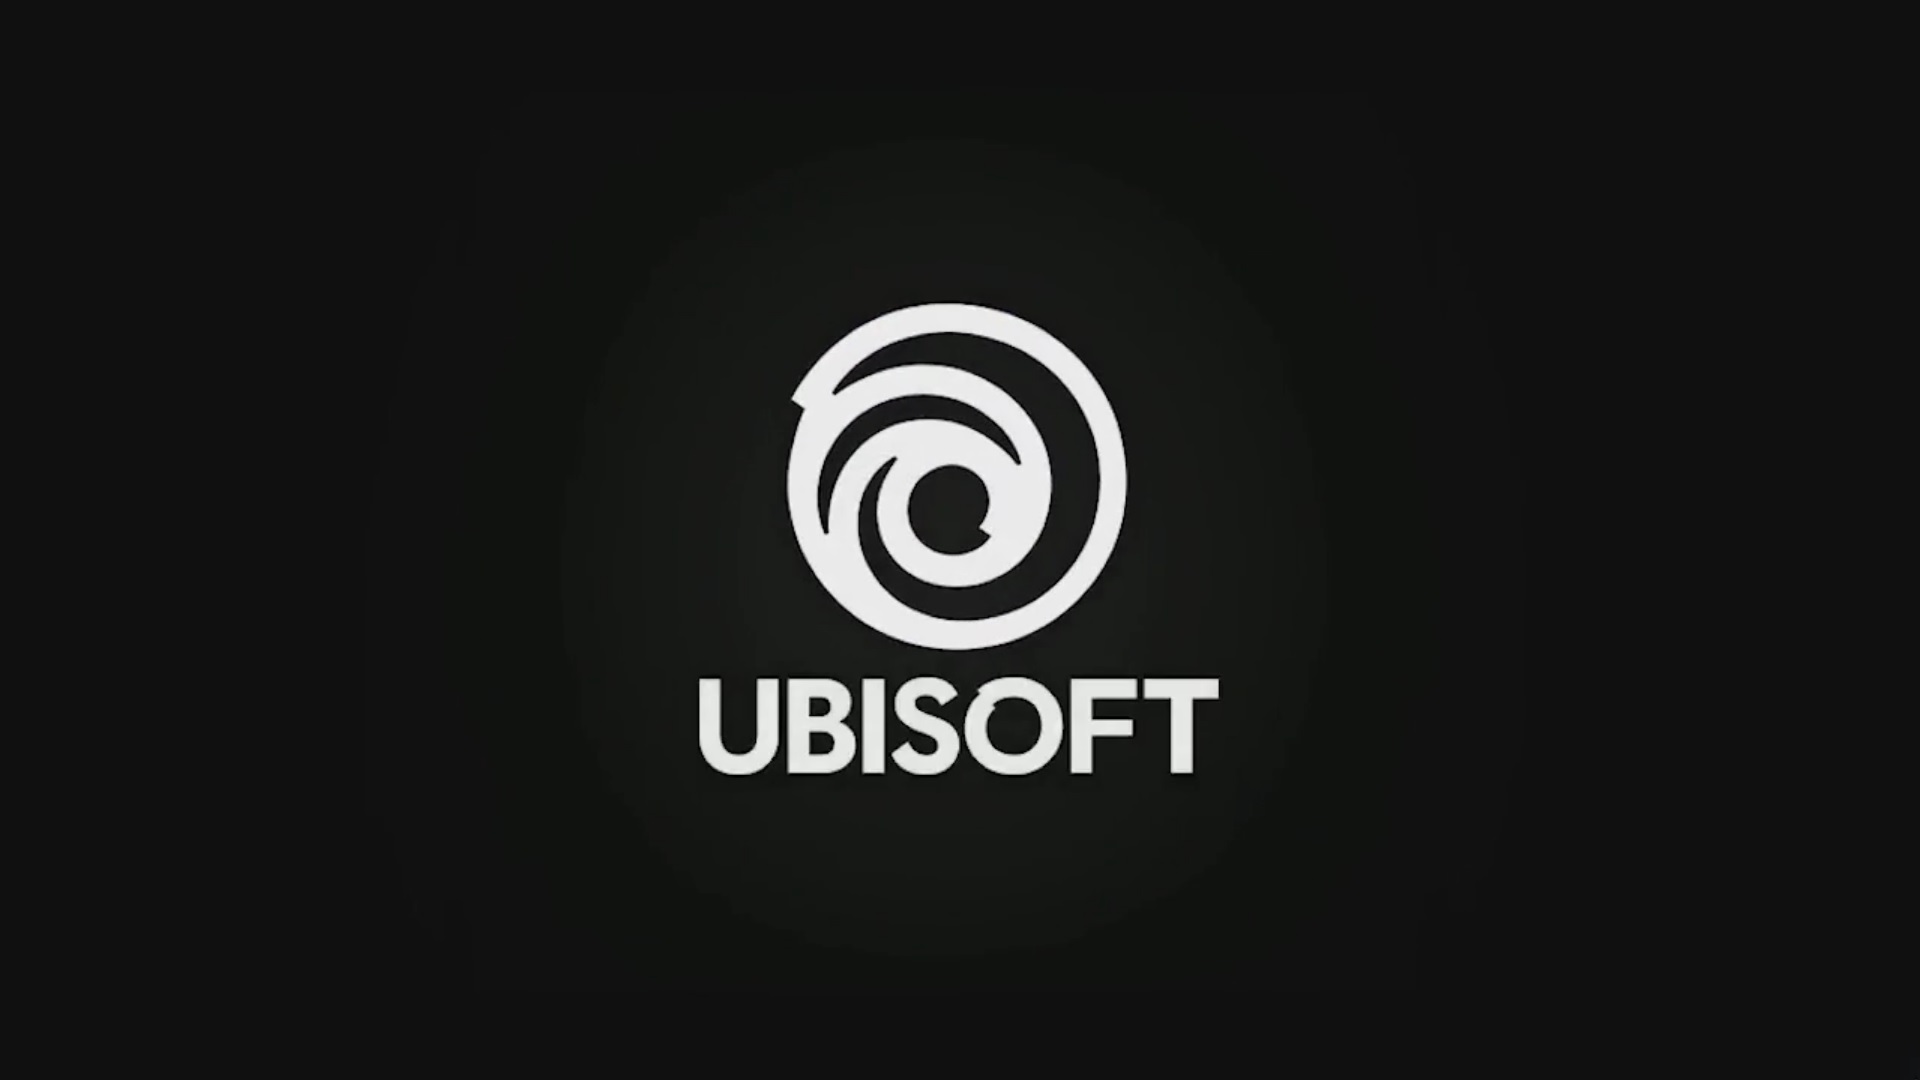 Ubisoft souhaite dorénavant s'investir dans le marché du free-to-play haut de gamme